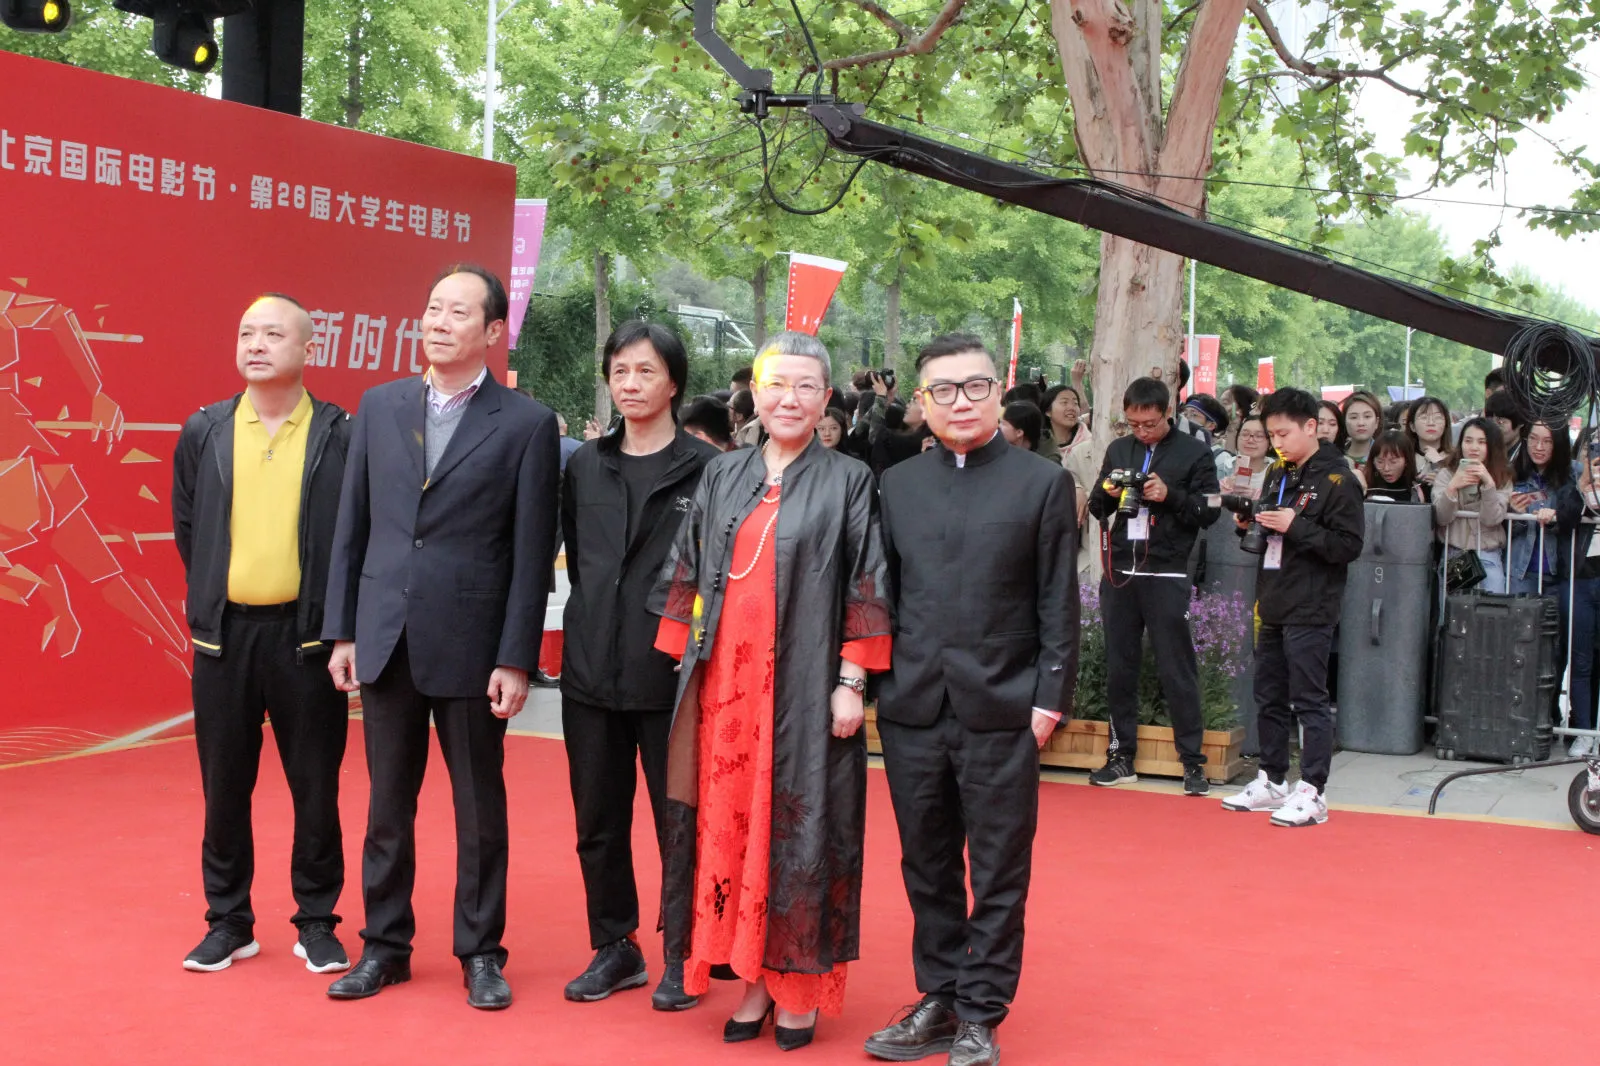 刘天久 高尔棣  Hu Wei 捷  Liu Miaomiao (director)   Cheng Qingsong .jpg